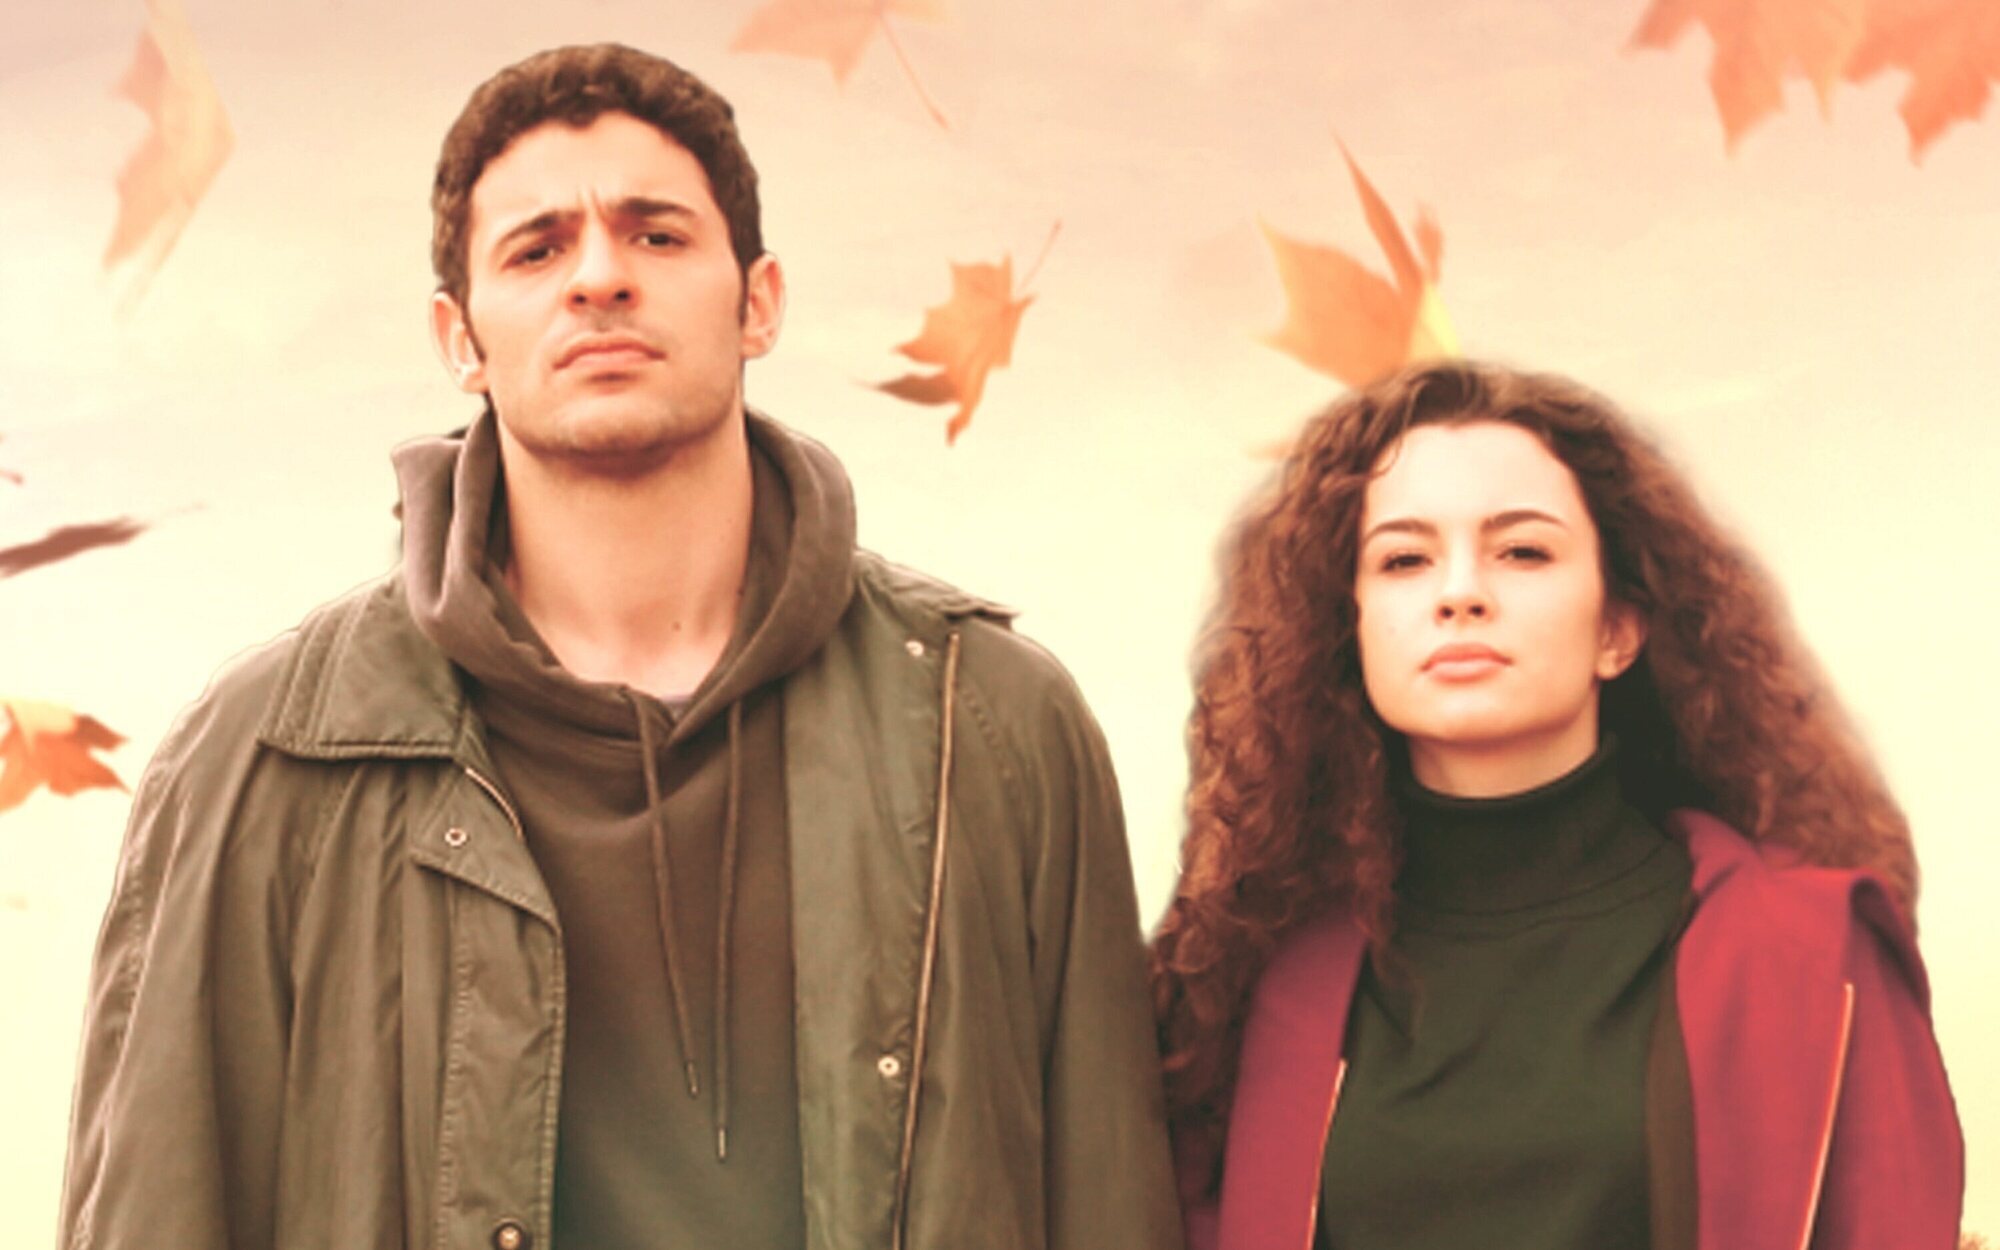 Conoce a los protagonistas de 'Hermanos', el nuevo éxito internacional de Antena 3 procedente de Turquía